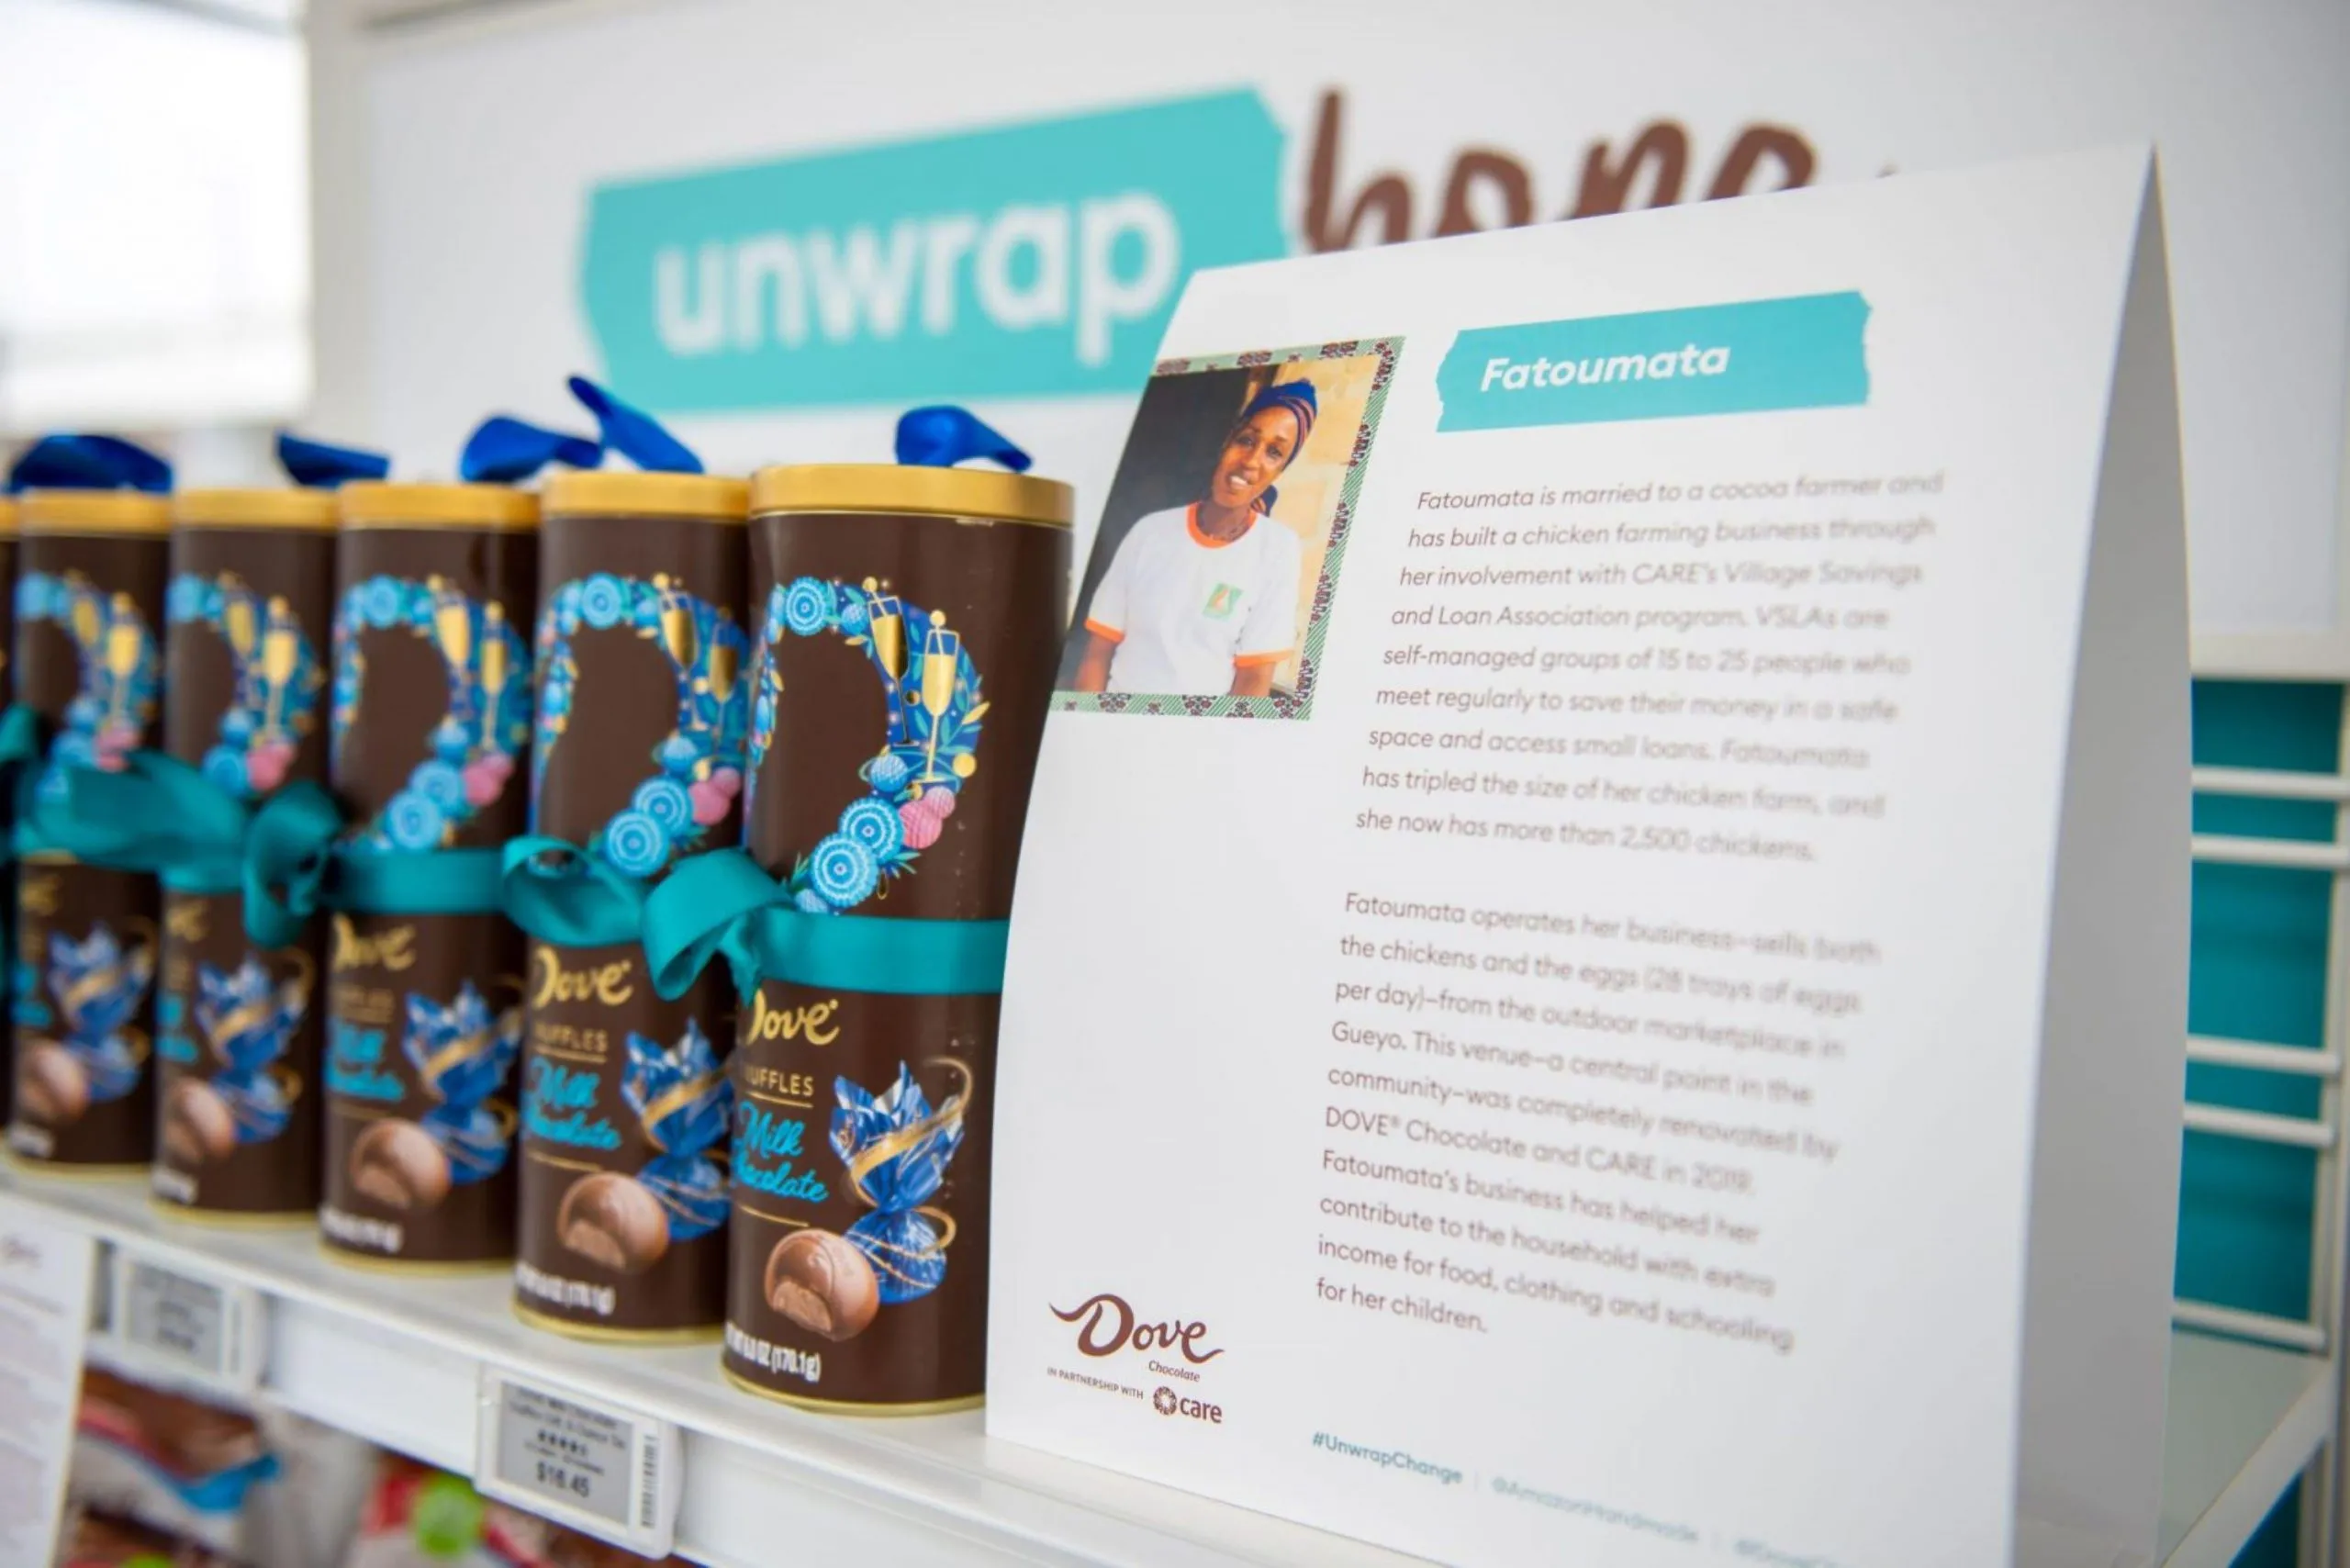 Una imagen de producto de Dove Milk Chocolate Truffles junto a una historia impresa de Fatoumata, una mujer involucrada en el programa Village Savings and Loan Associations de CARE.